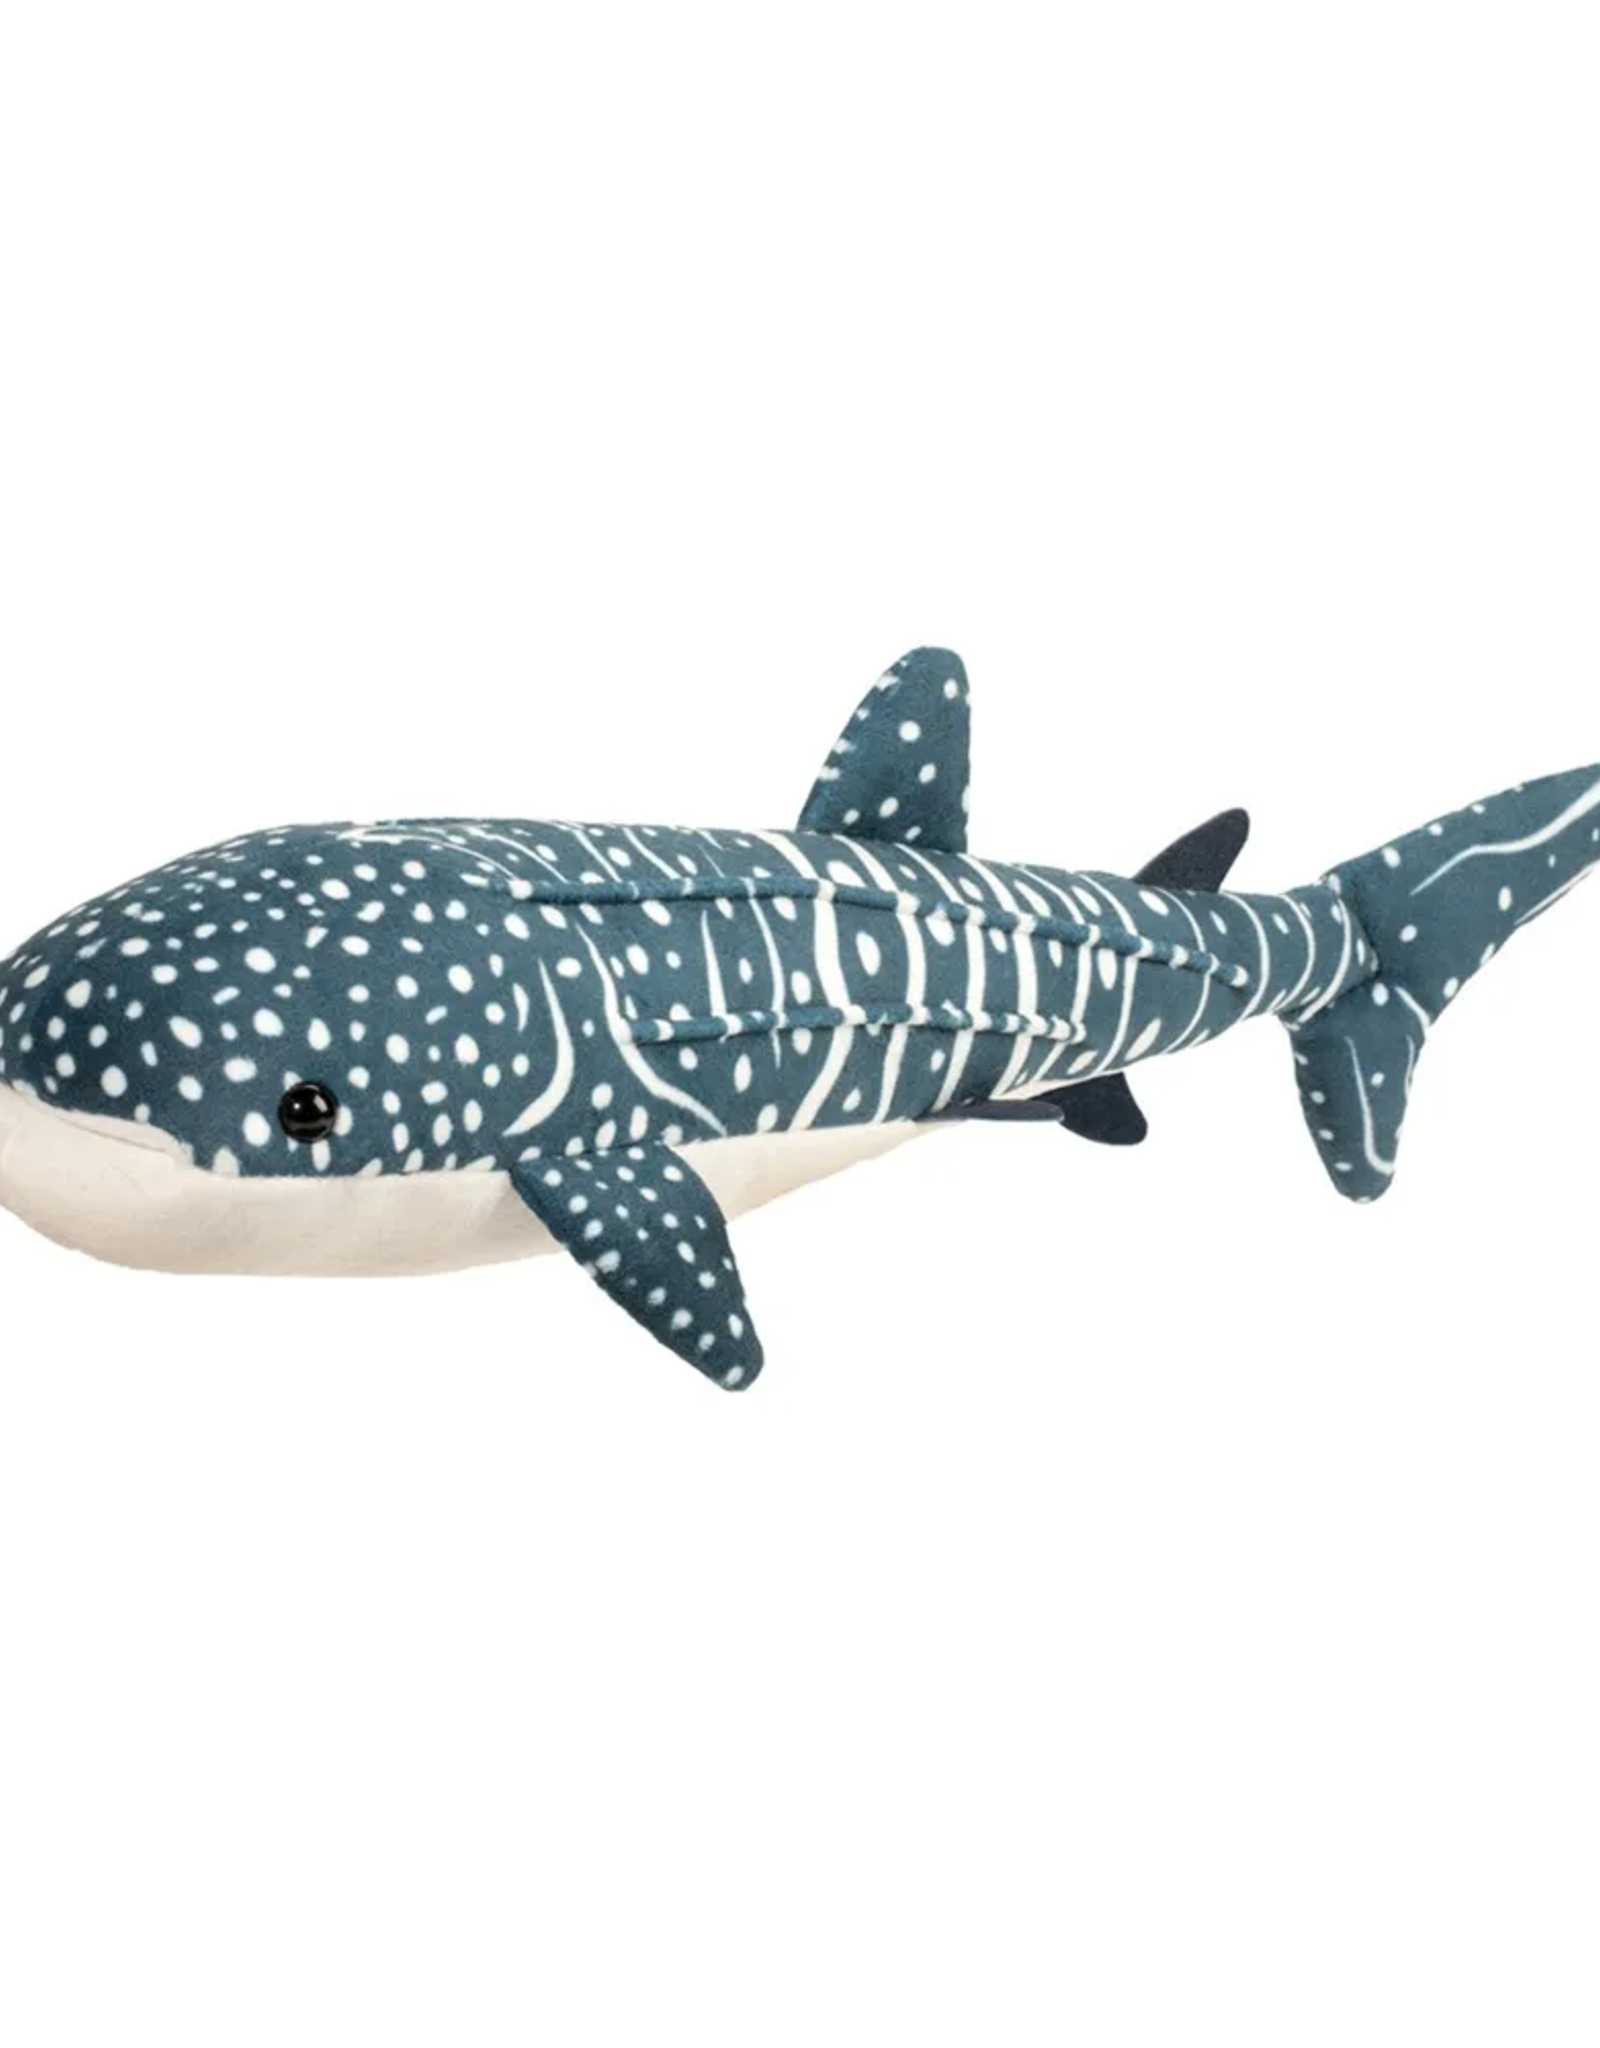 Douglas Decker Whale Shark